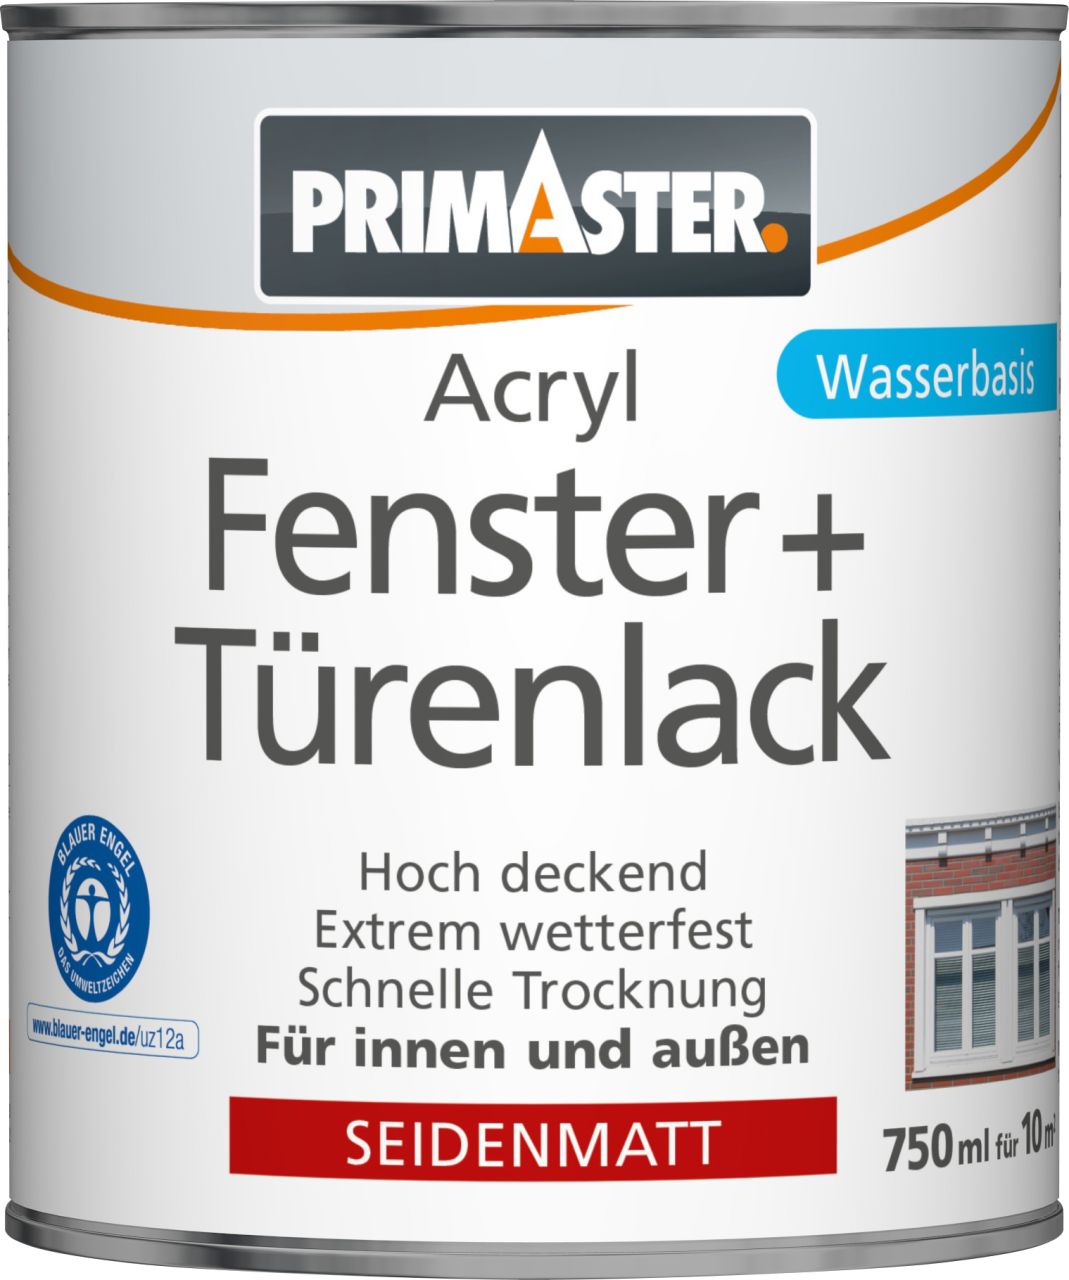 Primaster Acryl Fenster- und Türenlack 750 ml weiß seidenmatt von Primaster